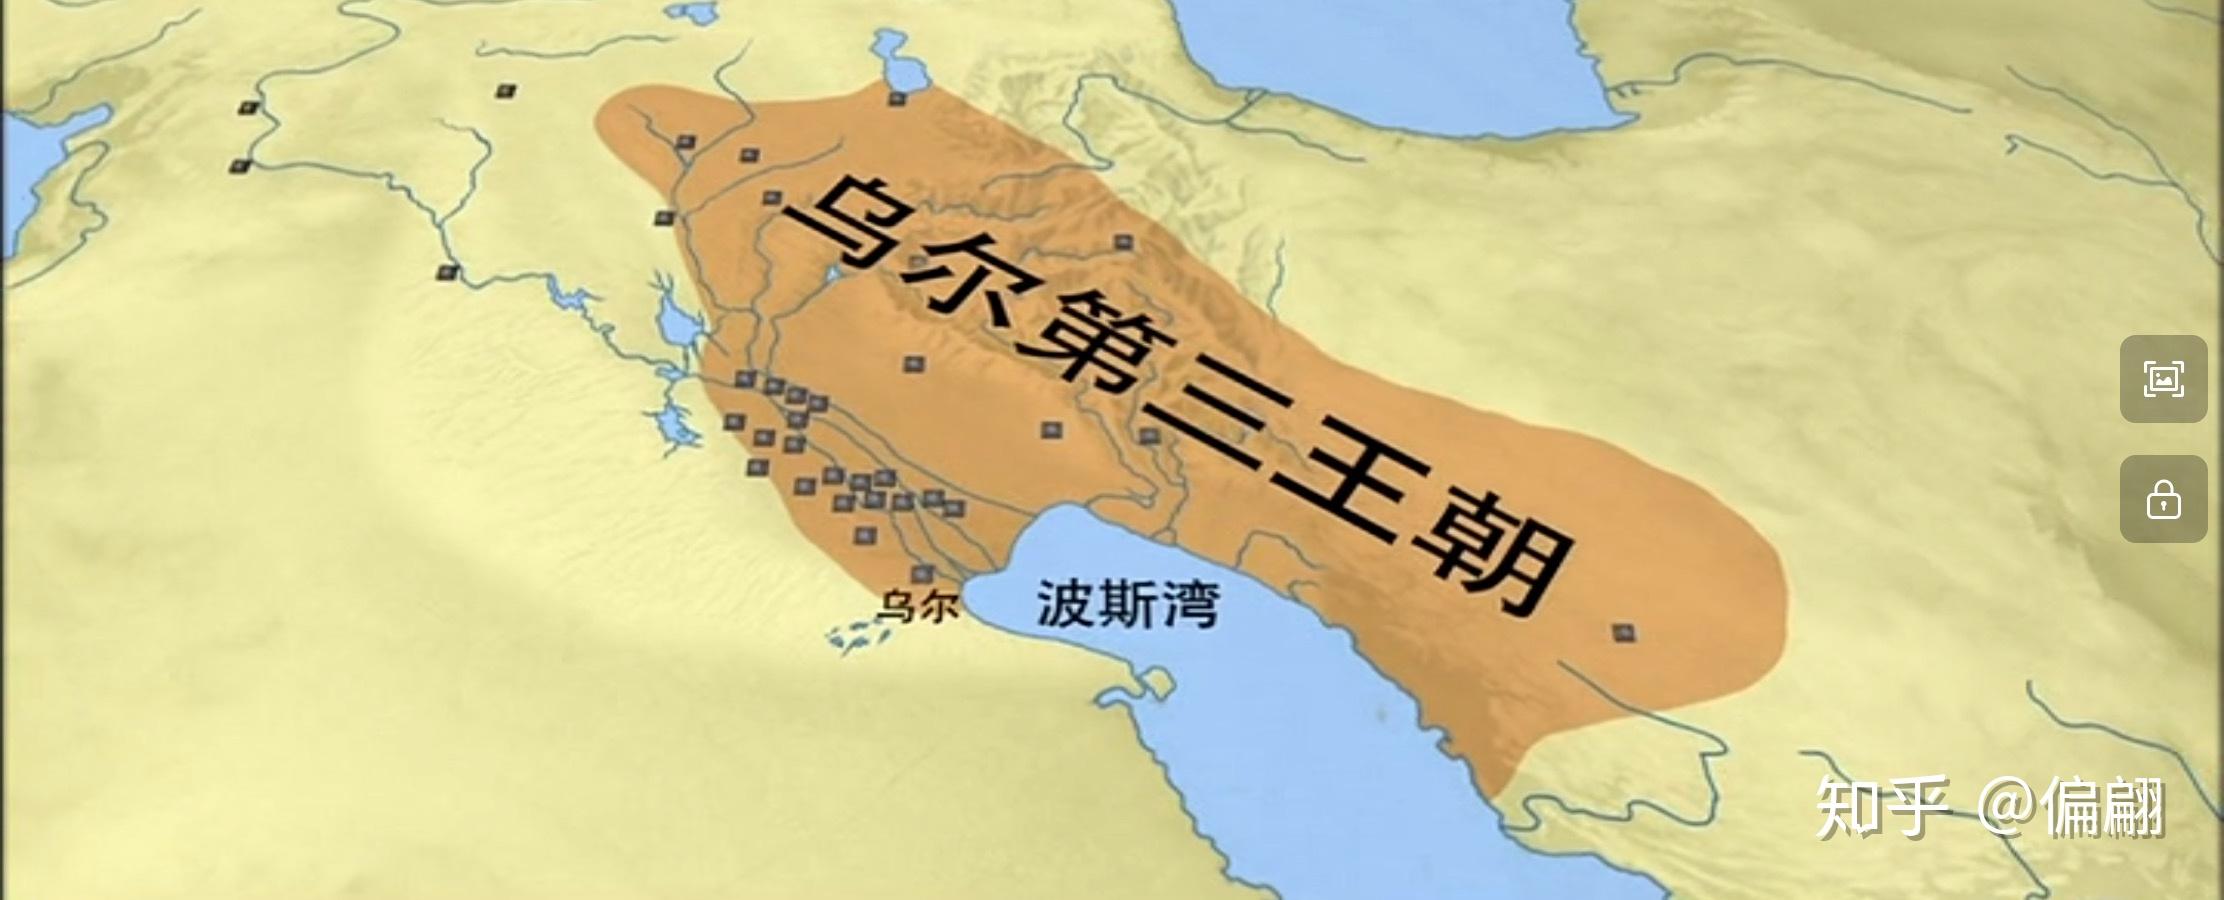 阿卡德王朝灭亡100多年后,两河流域迎来了新的统一王朝:乌尔第三王朝